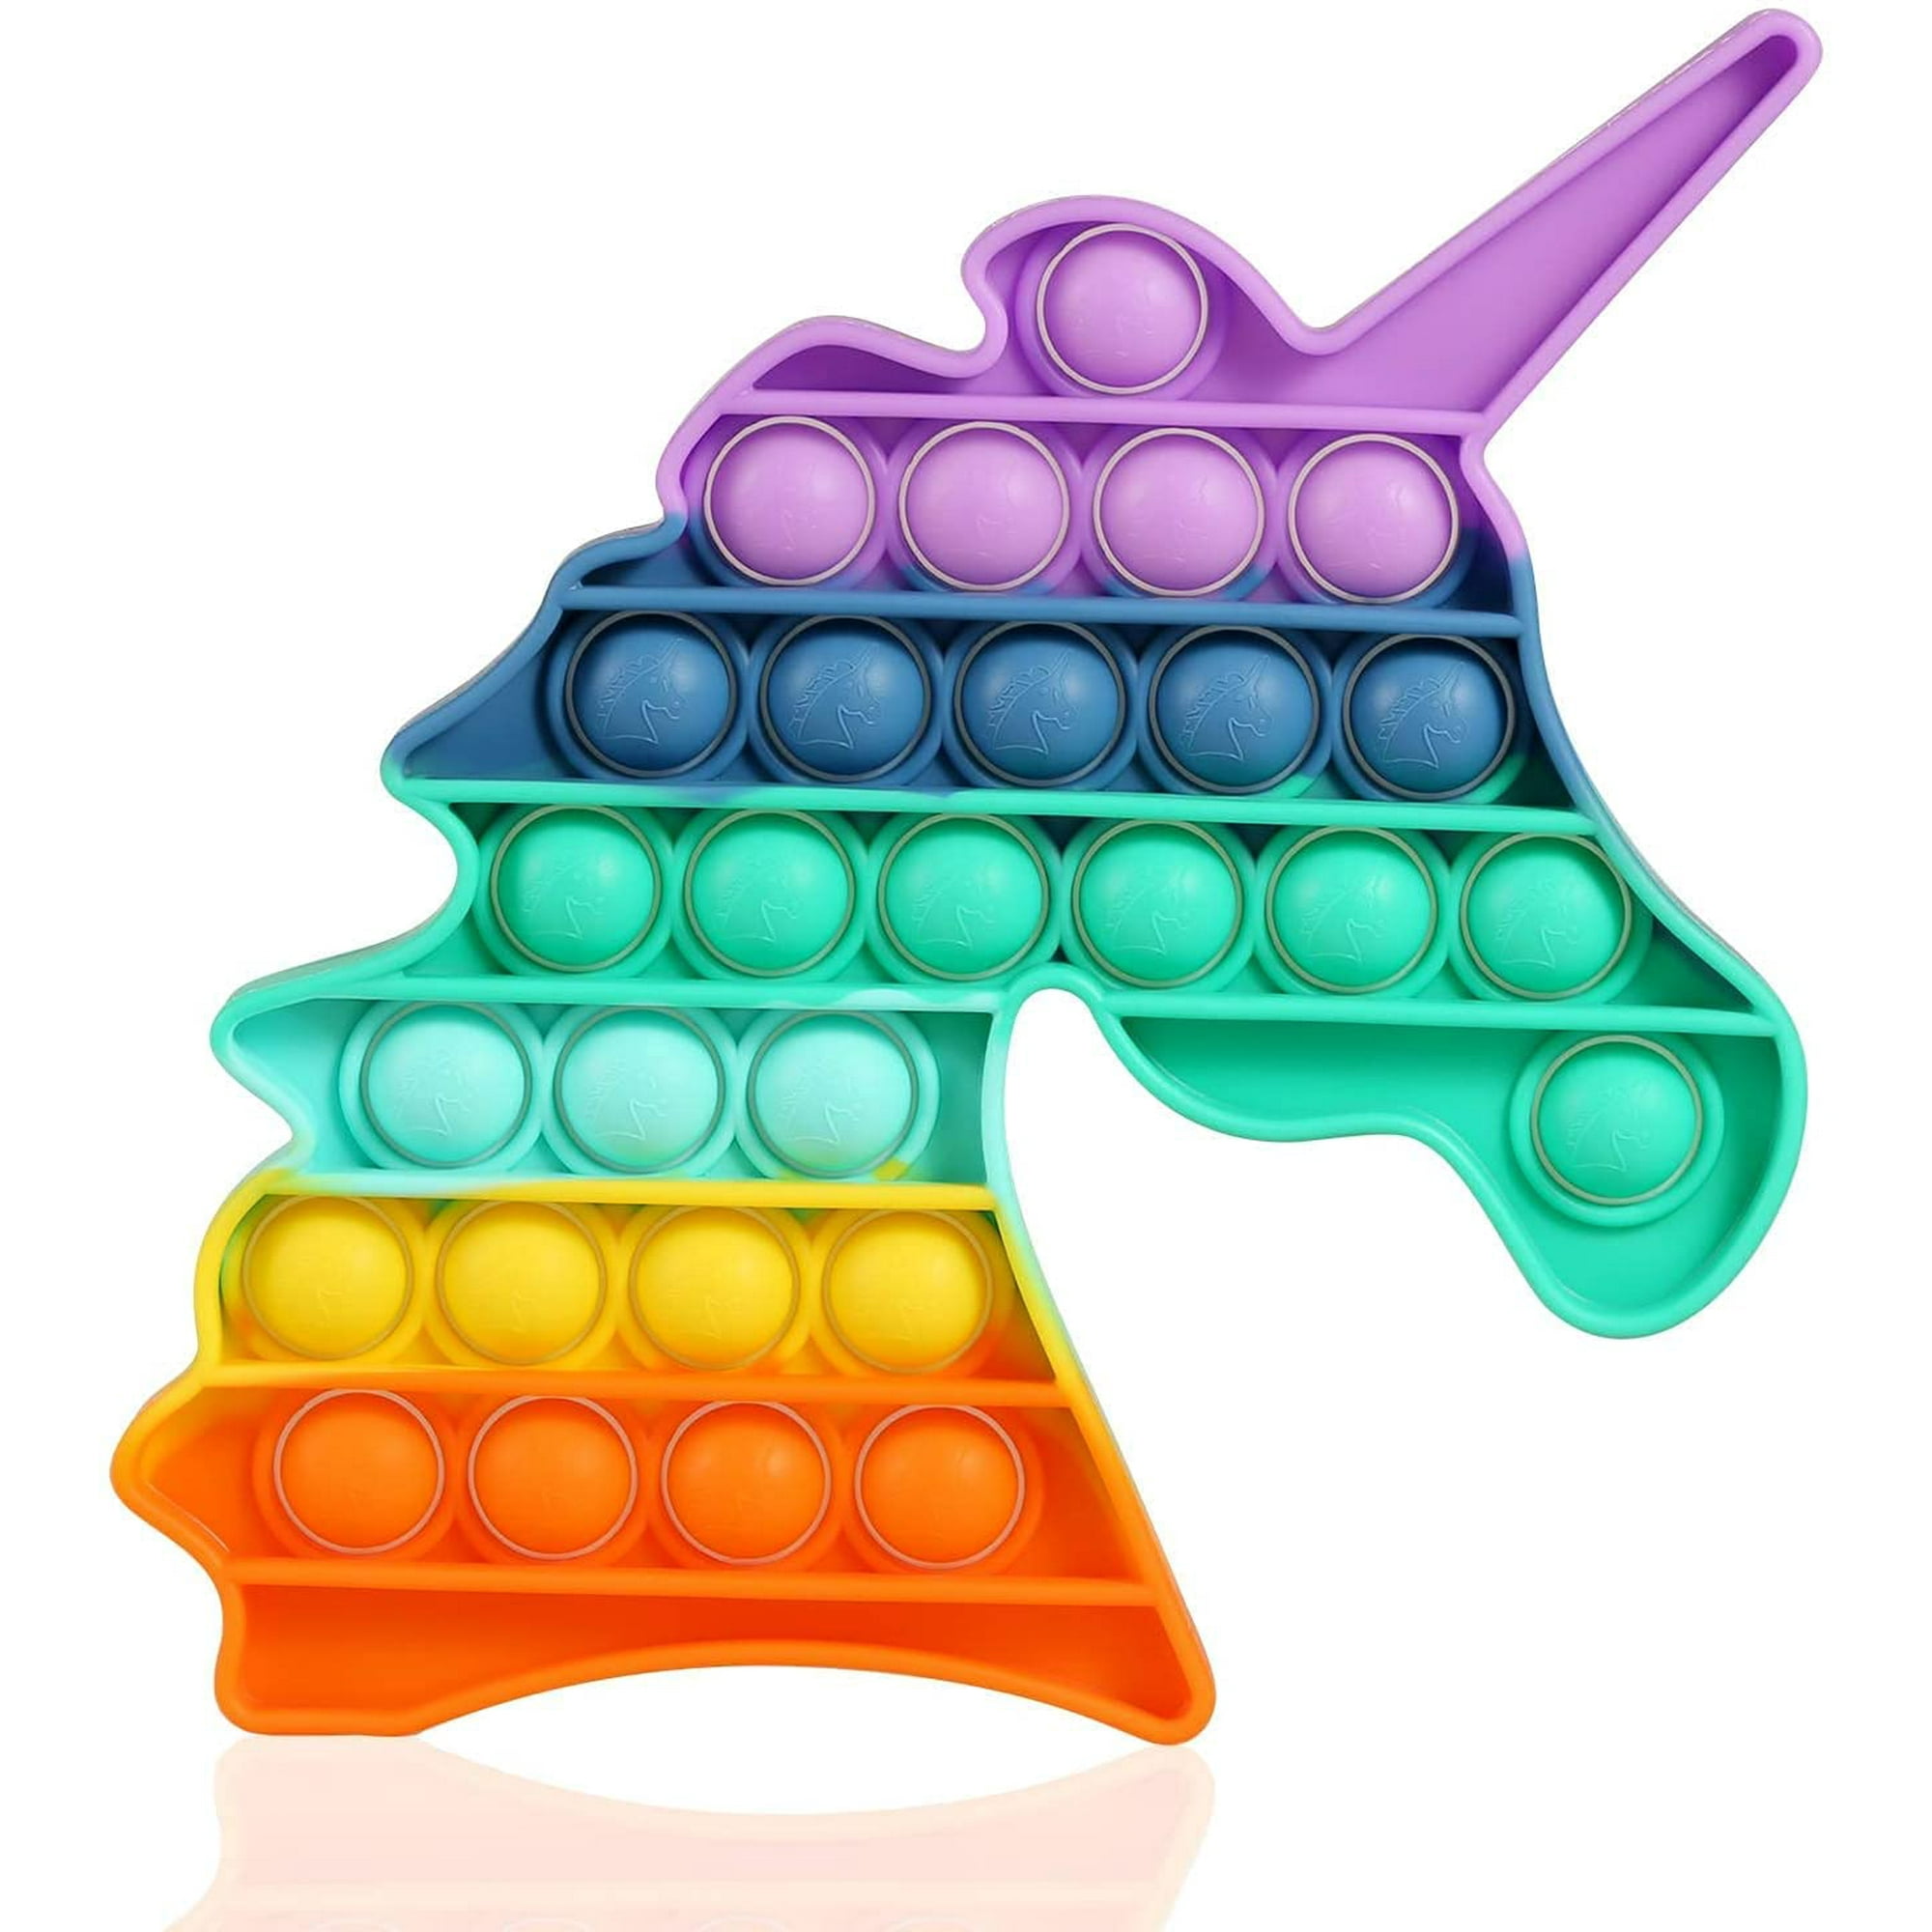 Bubble pop Fidget jouet antistress - Rond Arc-en-Ciel - Français